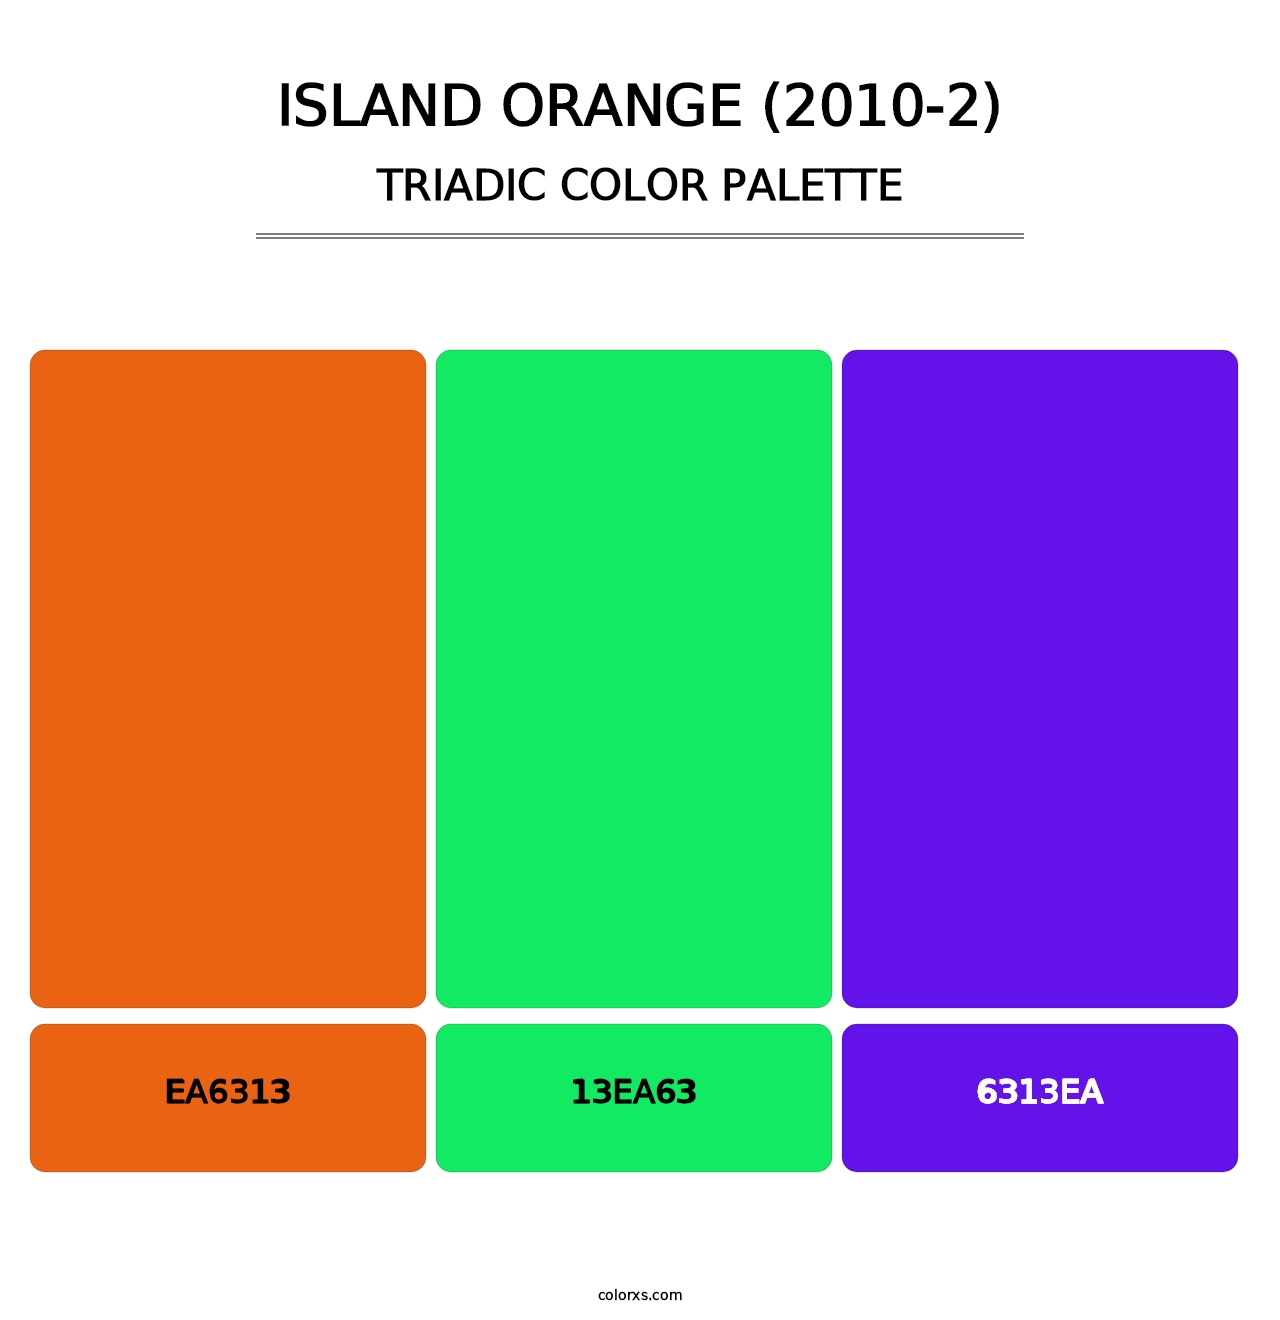 Island Orange (2010-2) - Triadic Color Palette